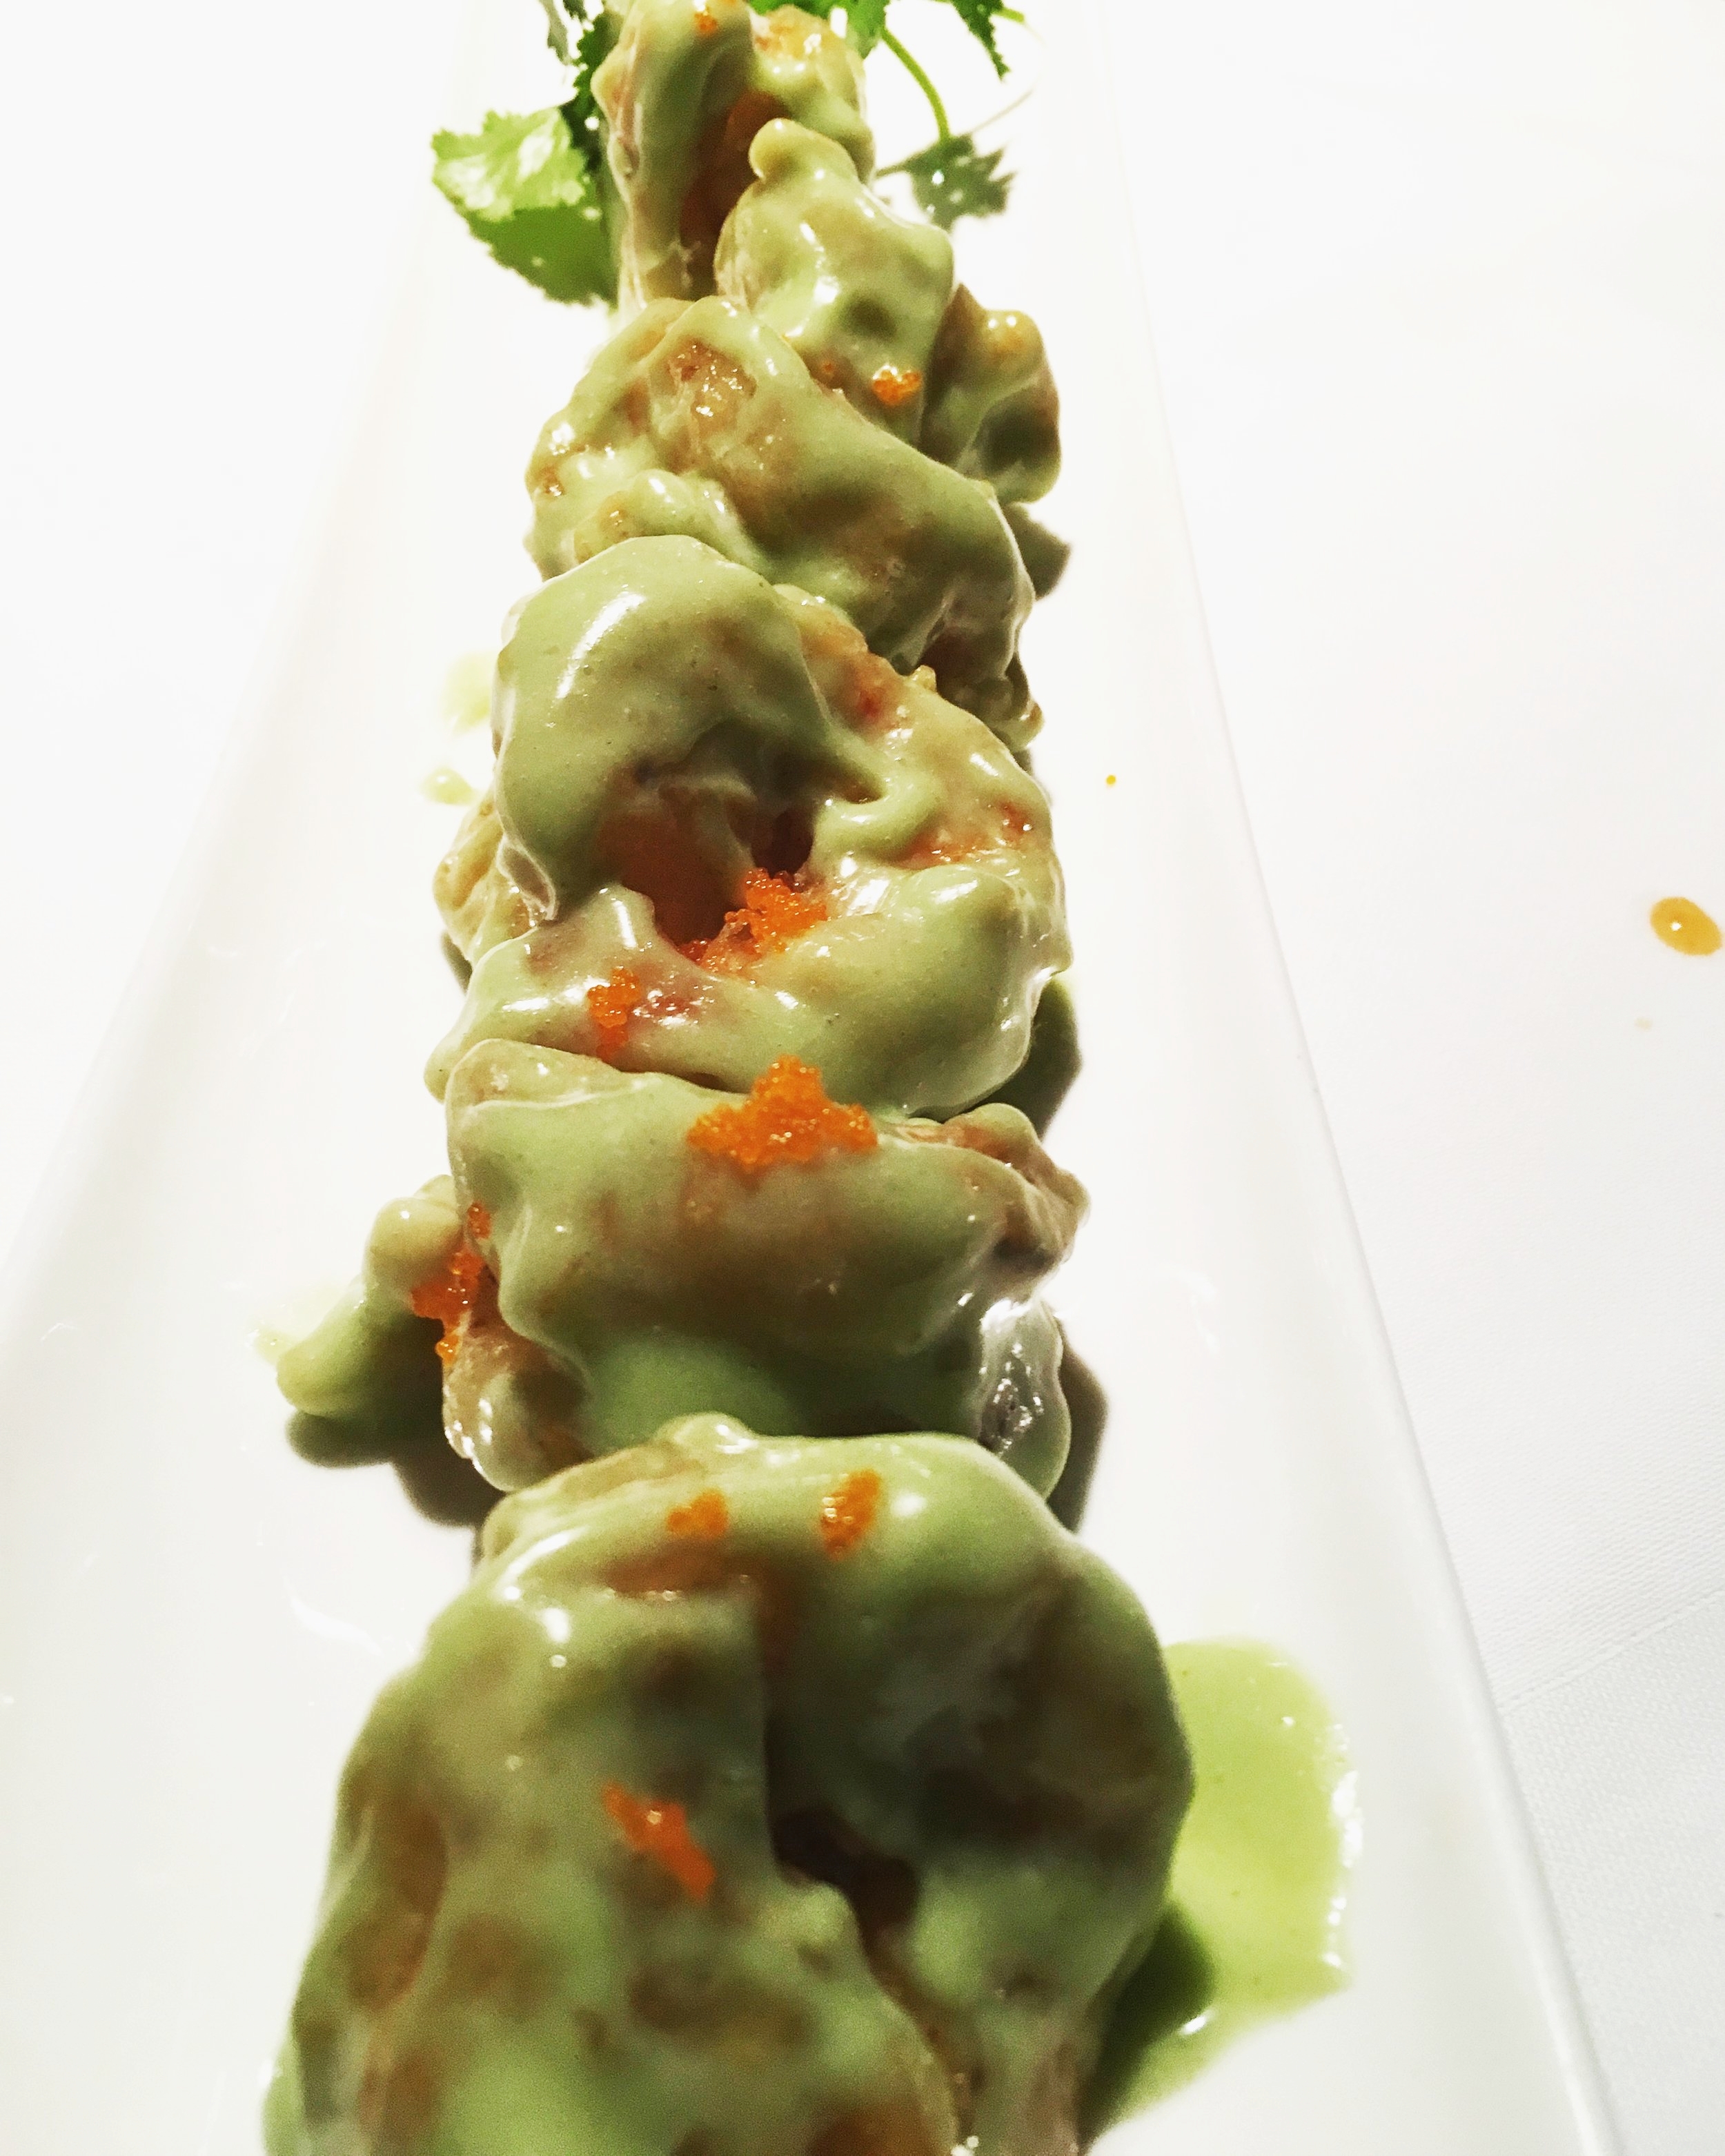 Prawns with wasabi sauce and caviar